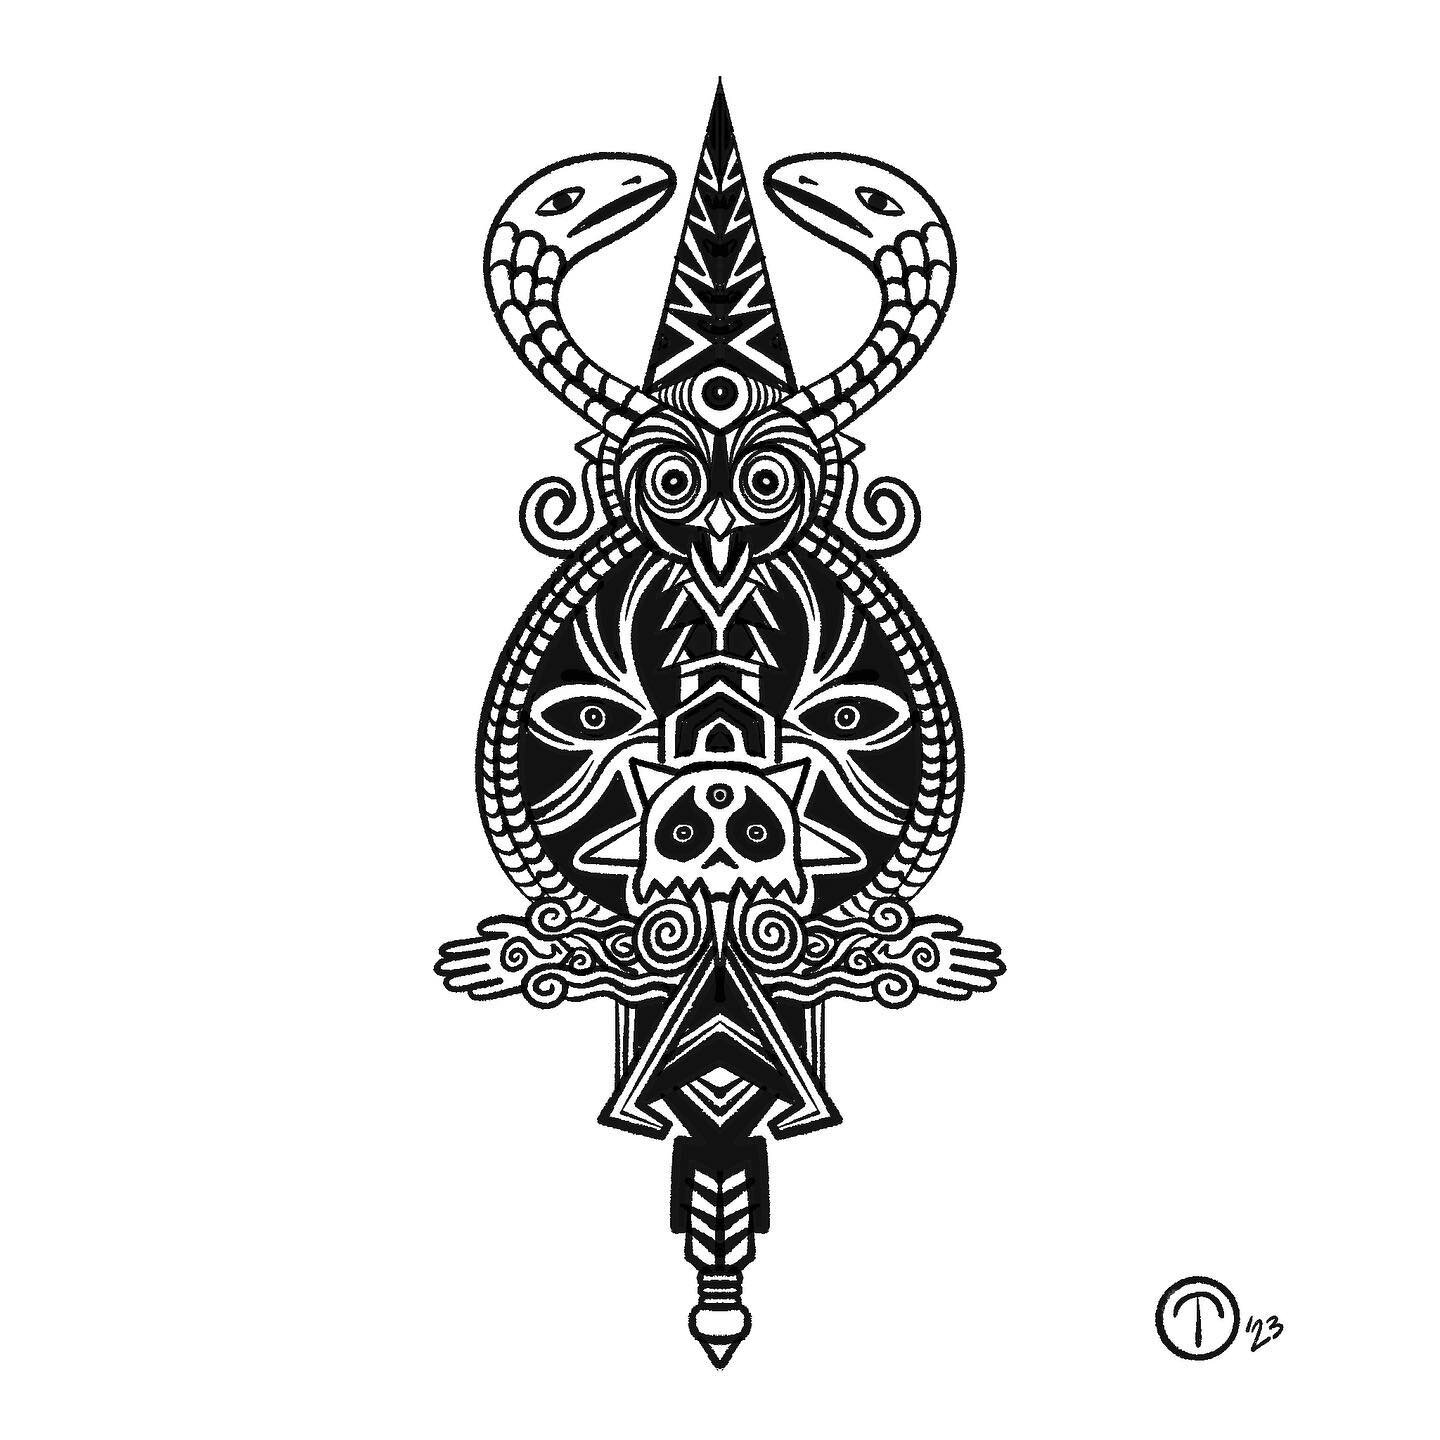 #zine #tatto #tattoostyle #tattooshop #art #ink #pen #draw #drawing #drawings #comics #wizard #bruja #brujx #power #serpent #snake #surreal